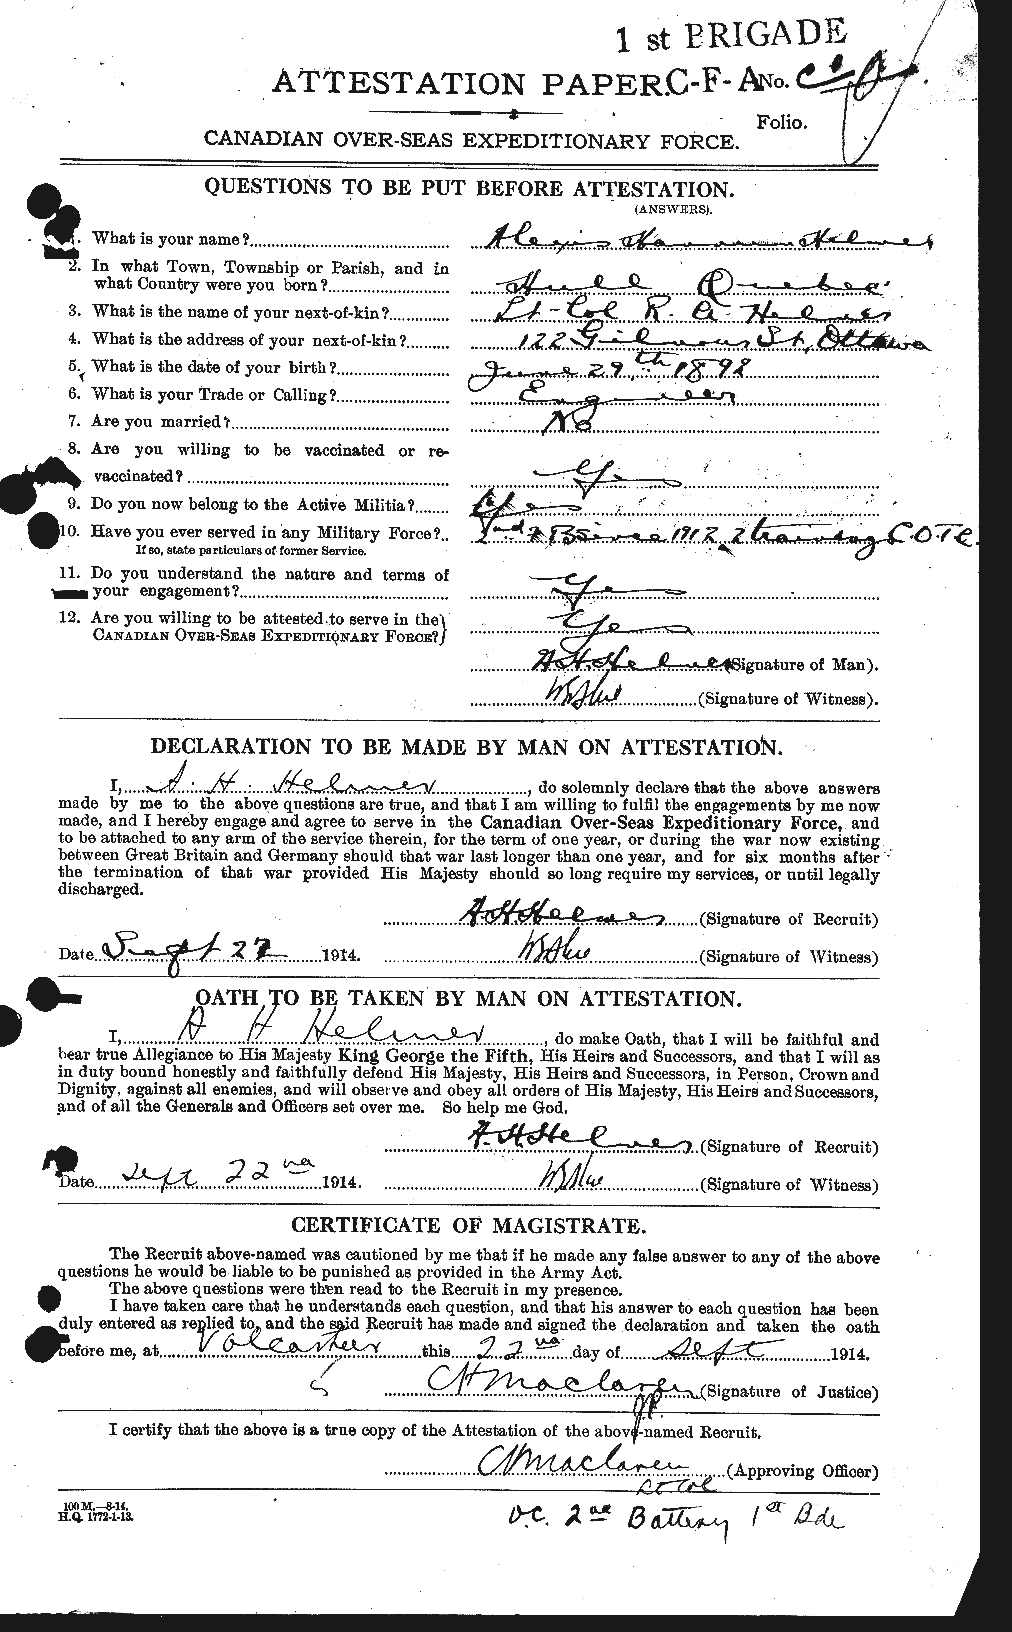 Dossiers du Personnel de la Première Guerre mondiale - CEC 385066a